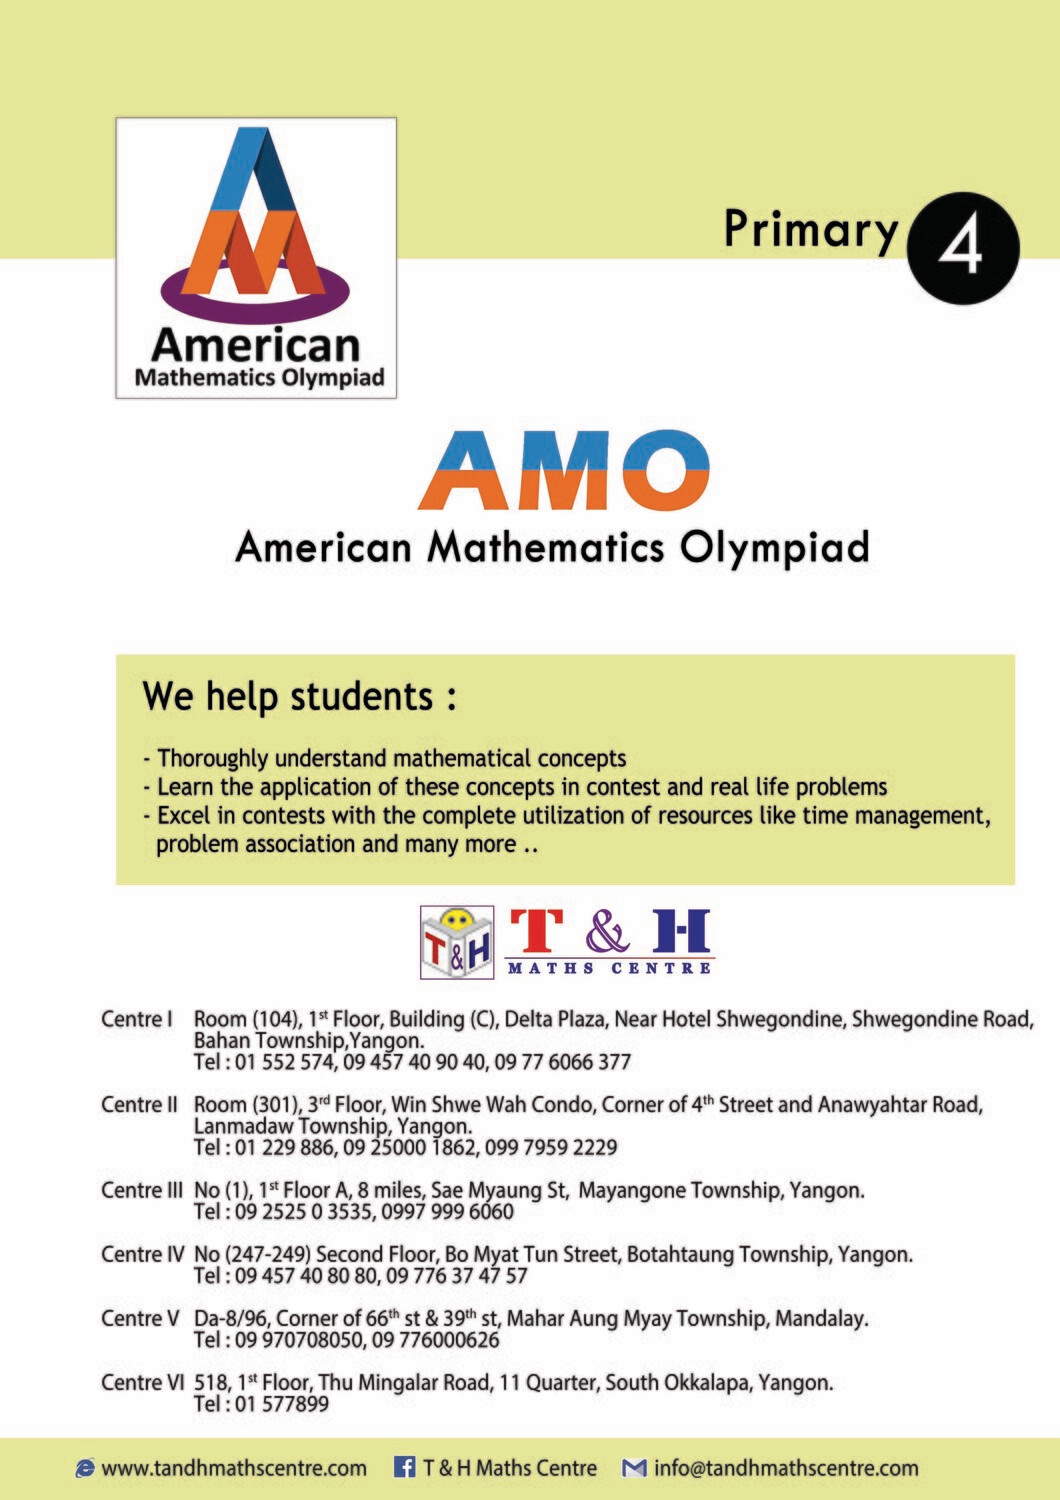 AMO - Primary 4 (2013 to 2018)